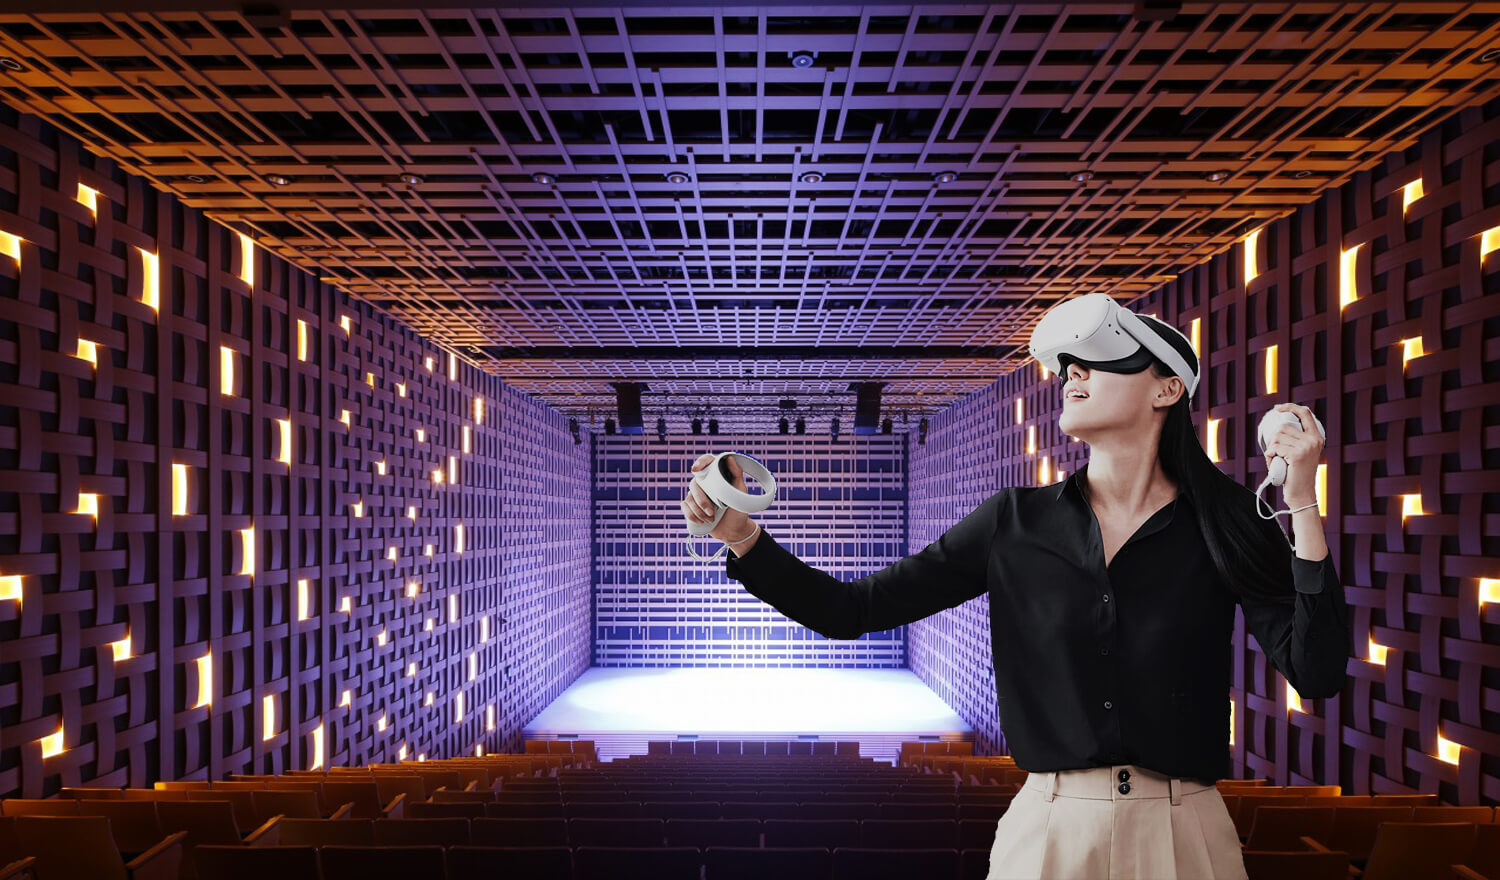 Kotobuki Seating España trabaja con tecnología VR (Realidad Virtual)